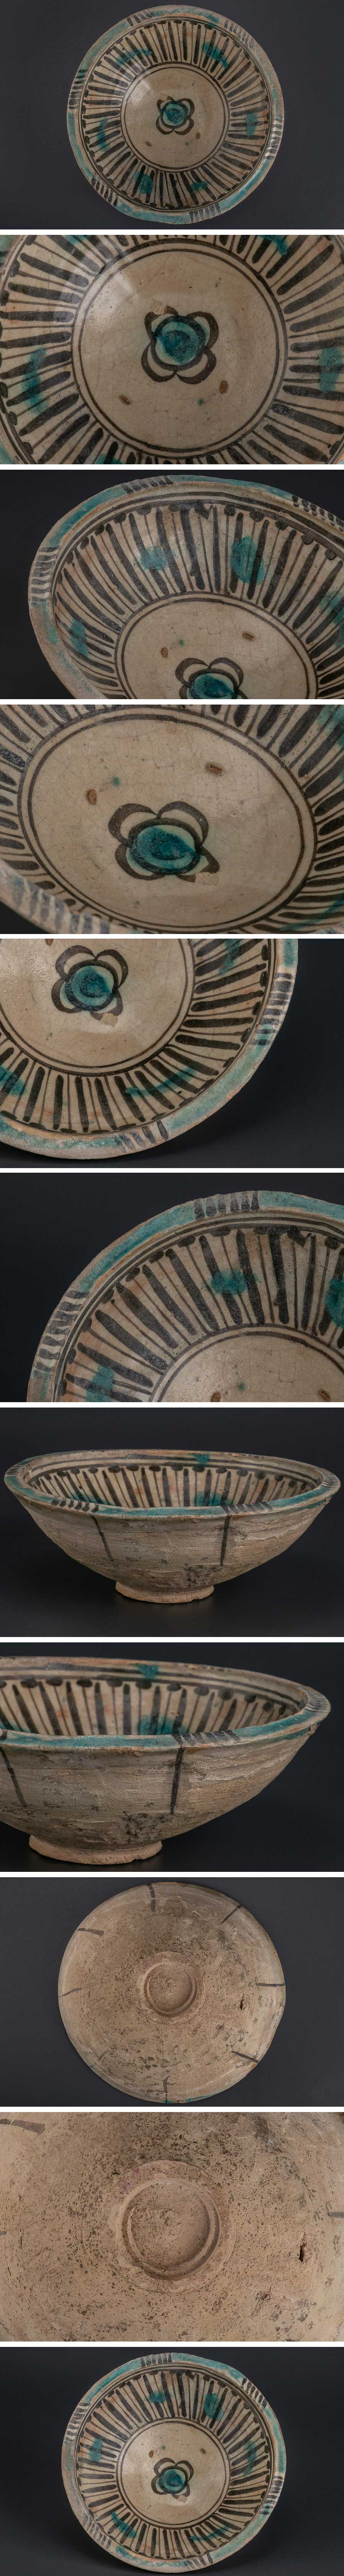 在庫あ格安『 ペルシャ 古陶磁 花絵文鉢 12-13世紀 8818 』発掘品 考古学 古美術 西洋美術 オブジェ インテリア 飾皿 アンティーク イスラム陶器